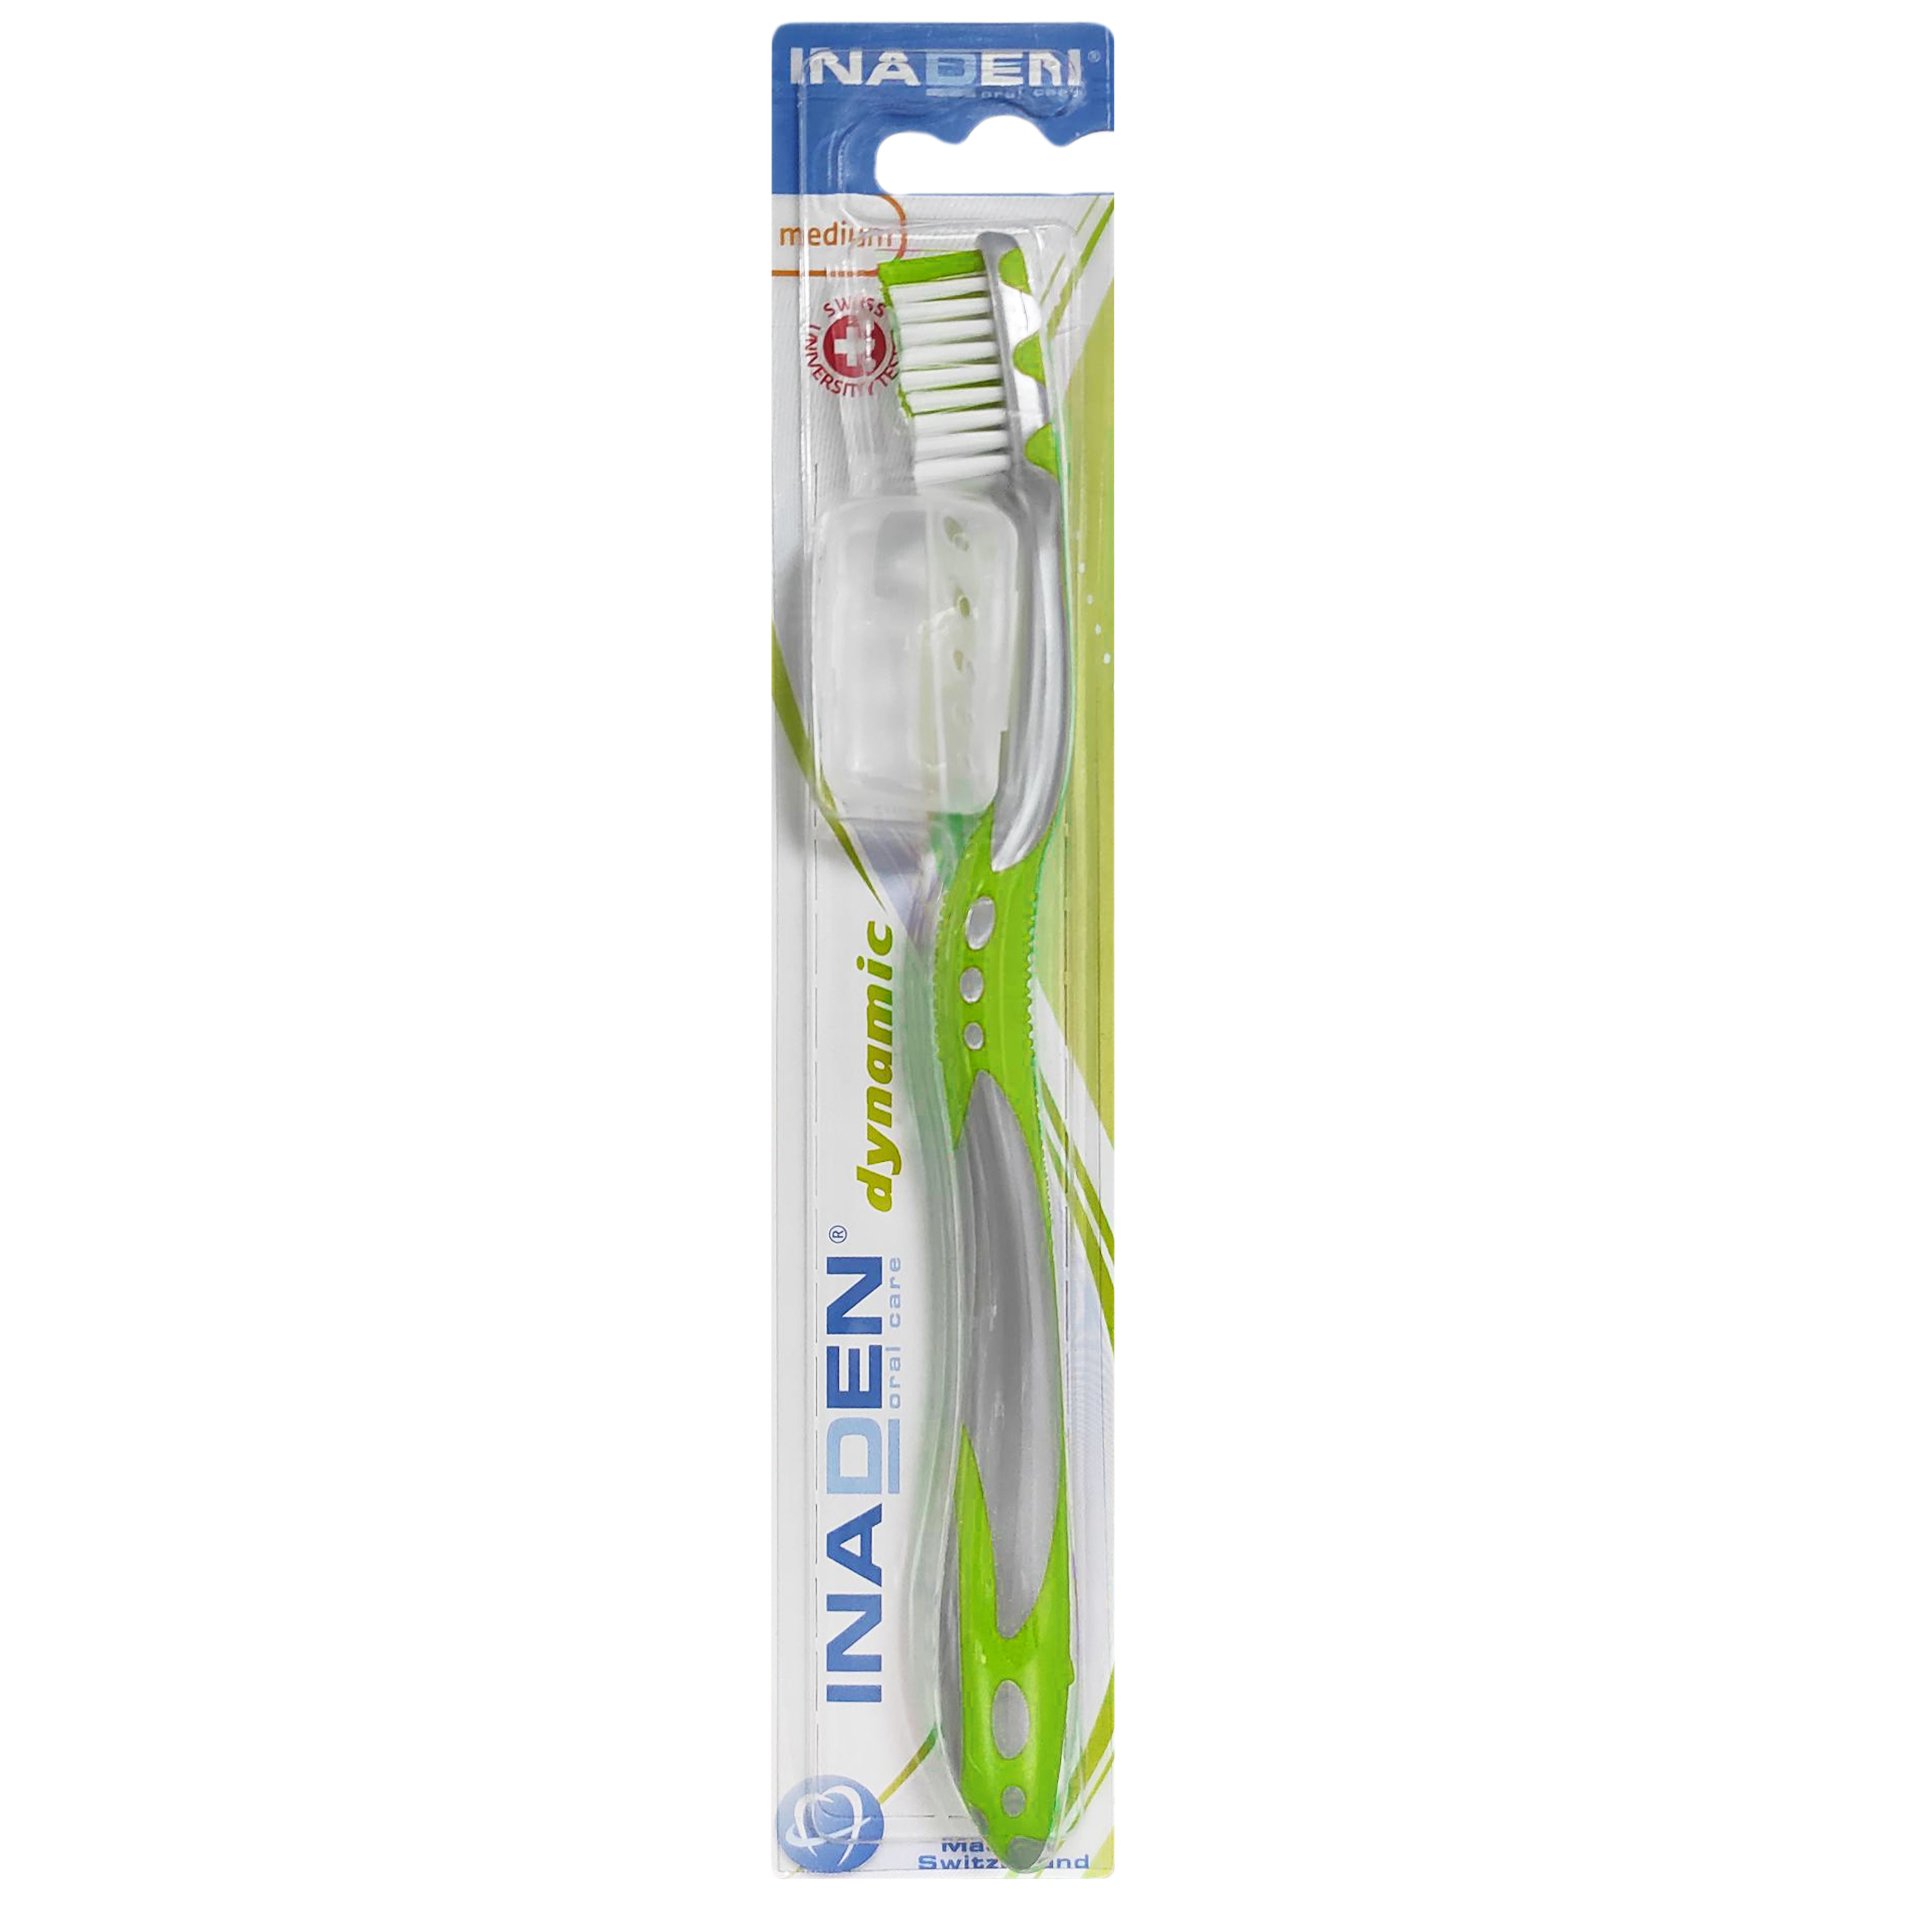 Inaden Dynamic Medium Toothbrush Μέτρια Οδοντόβουρτσα για Βαθύ Καθαρισμό 1 Τεμάχιο – Πράσινο